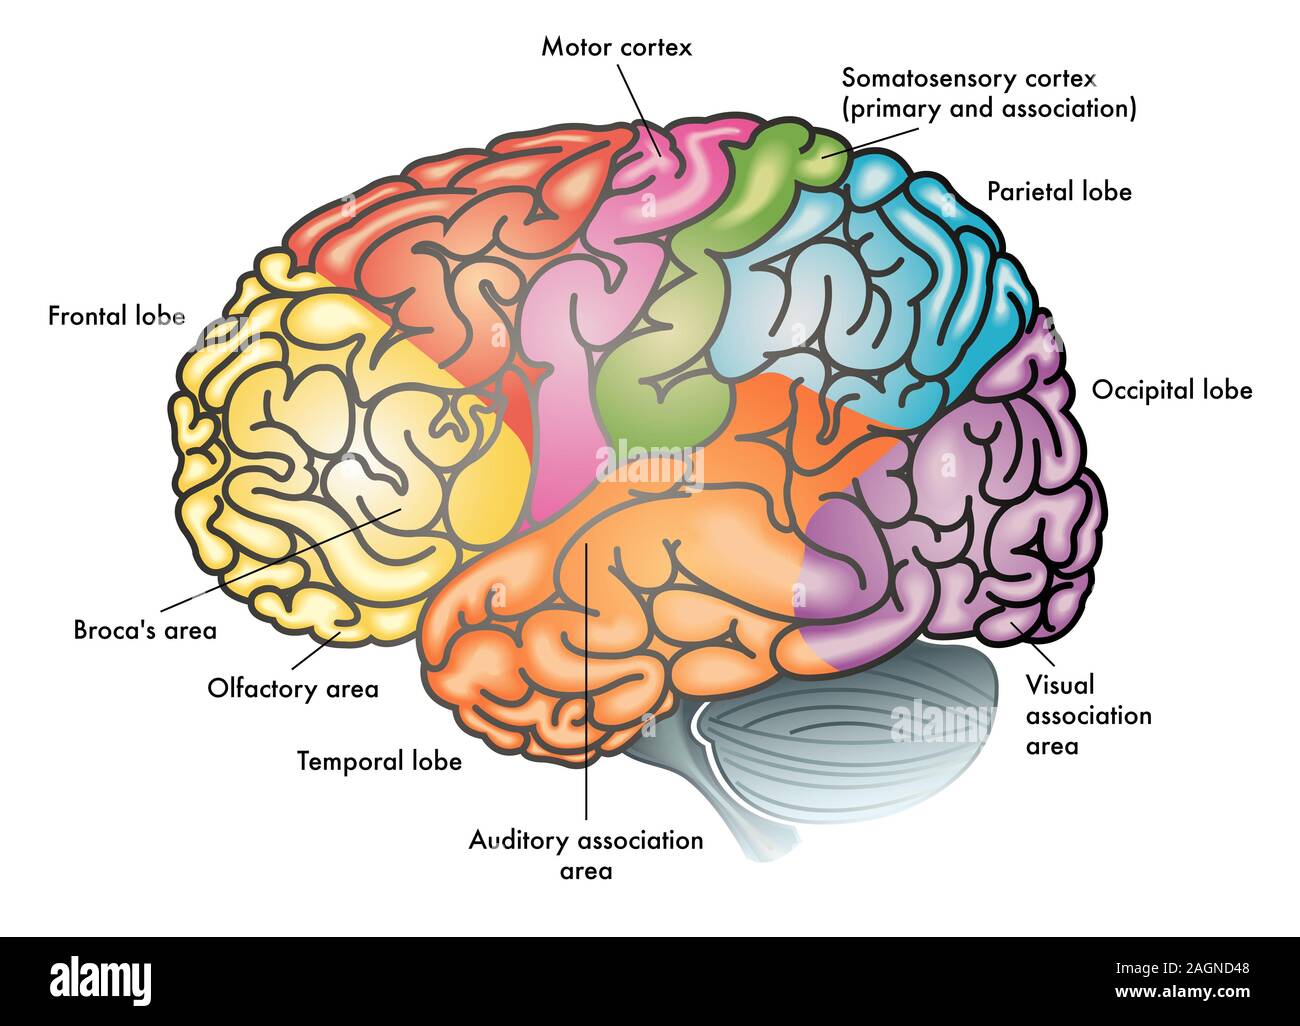 Medizinische bunte Abbildung eines menschlichen Gehirns mit unterschiedlichen funktionalen Bereichen mit verschiedenen Farben hervorgehoben Stockfoto